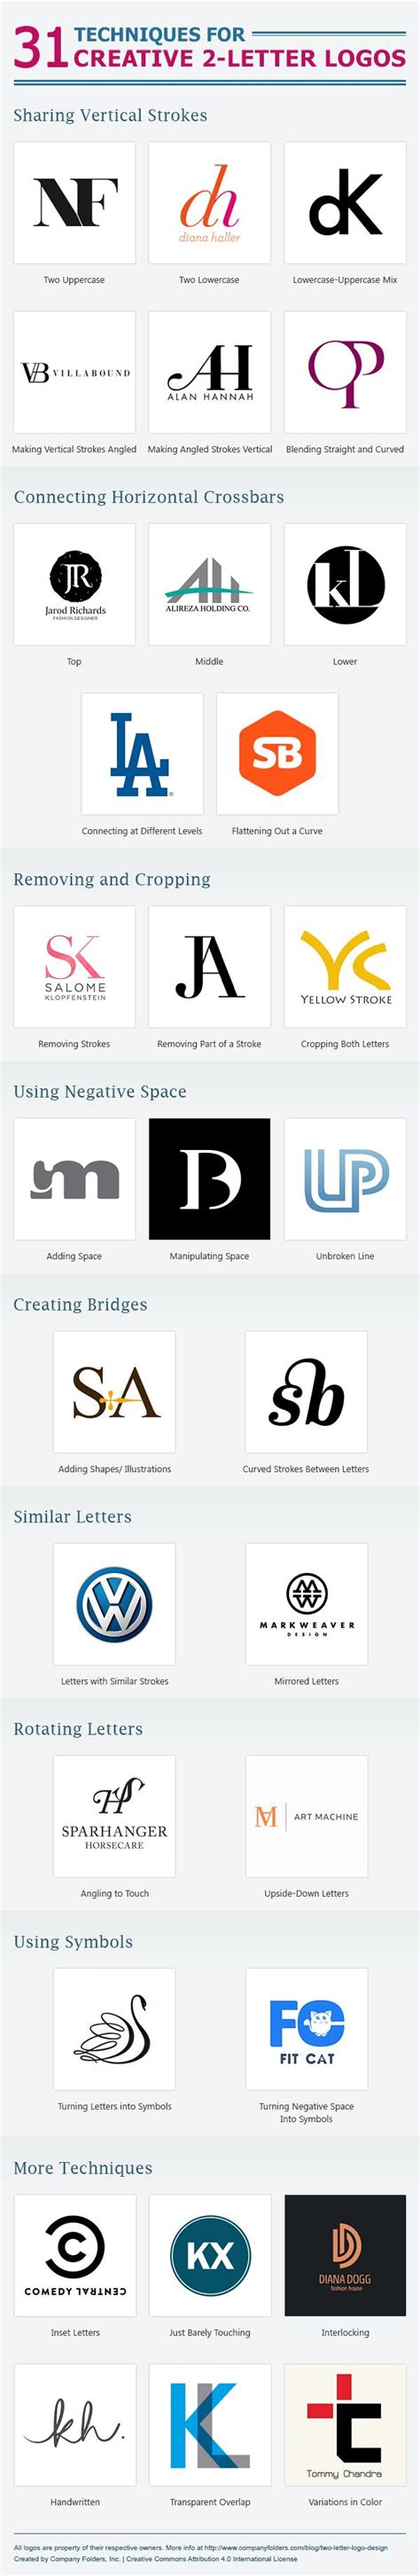 tips  creating  letter based logo